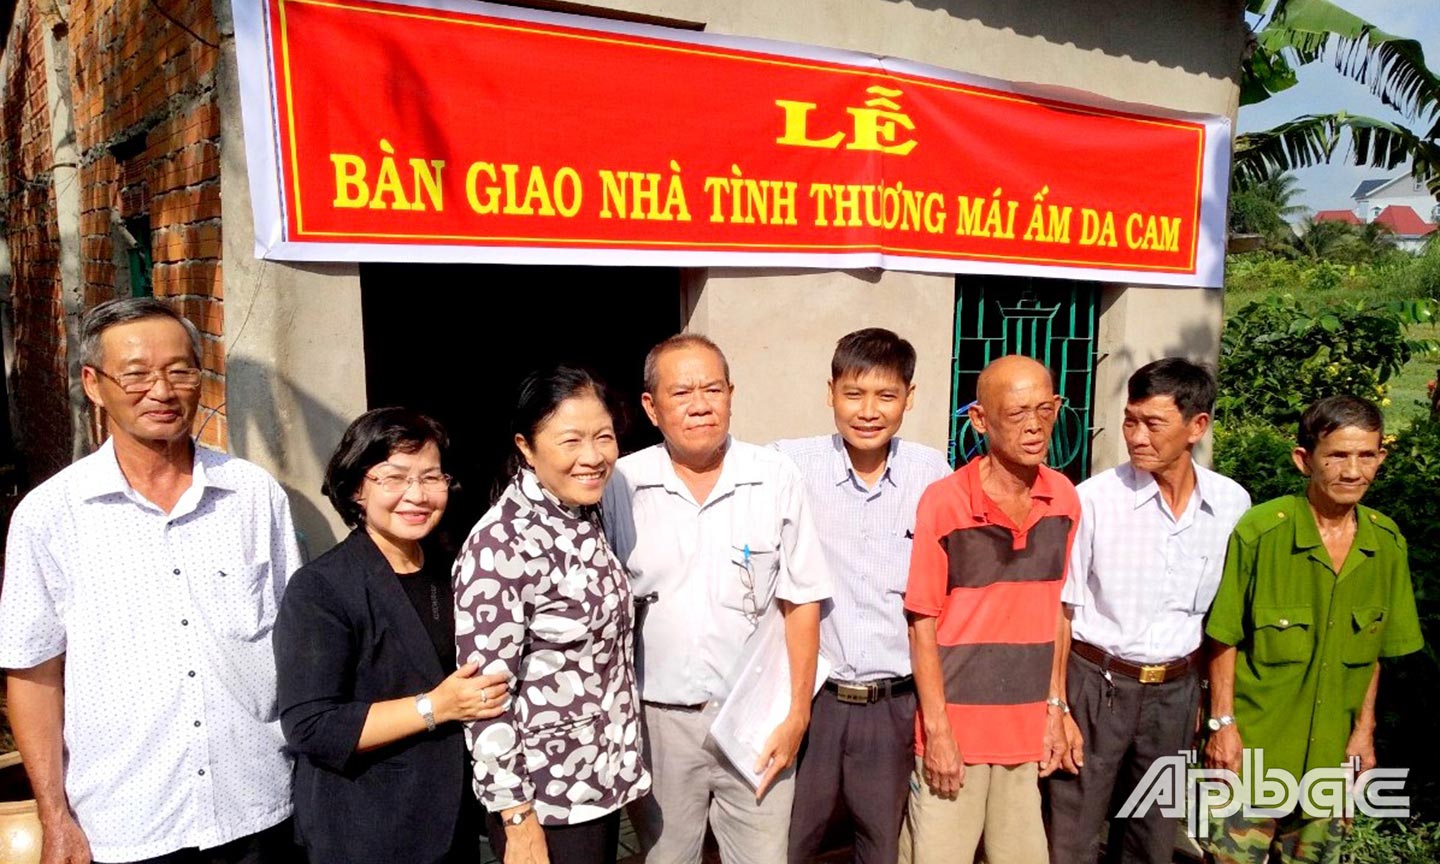 Đồng chí Dương Thị Lệ (thứ 3, từ trái sang) bàn giao “Mái ấm da cam” cho NNCĐDC.